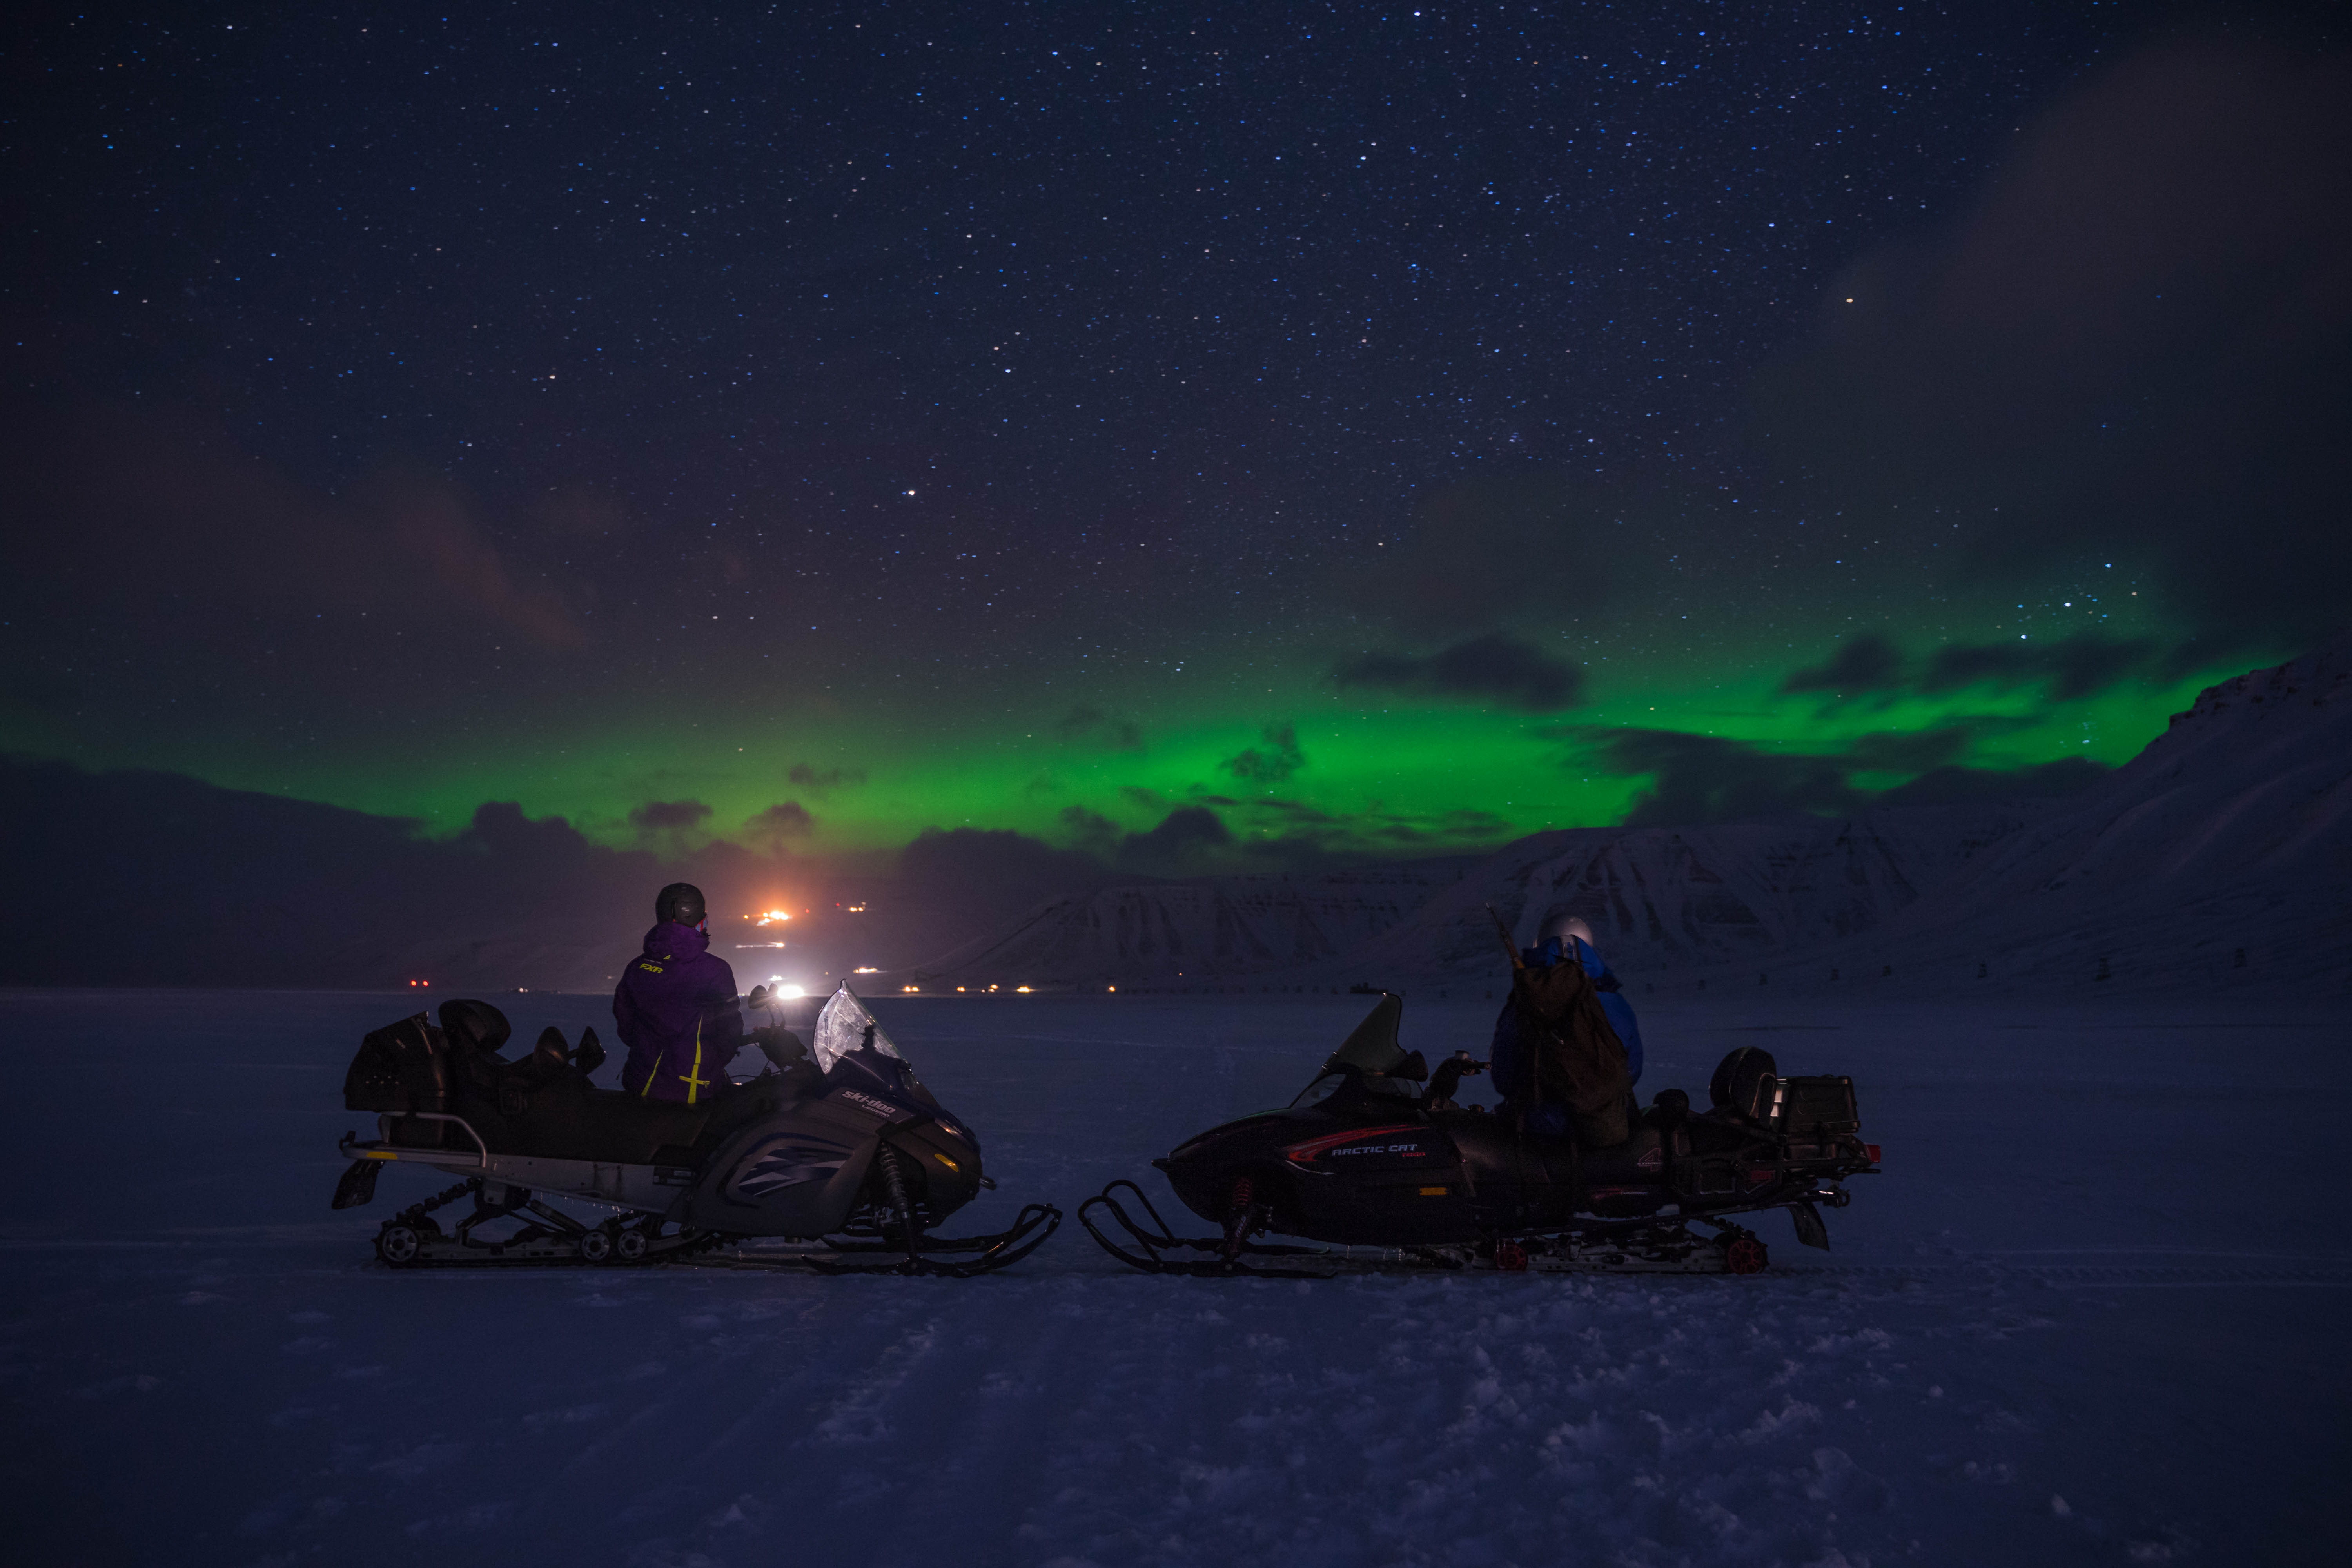 To personer på snøscootere som ser utover et landskap med nordlys på himmelen i bakgrunnen